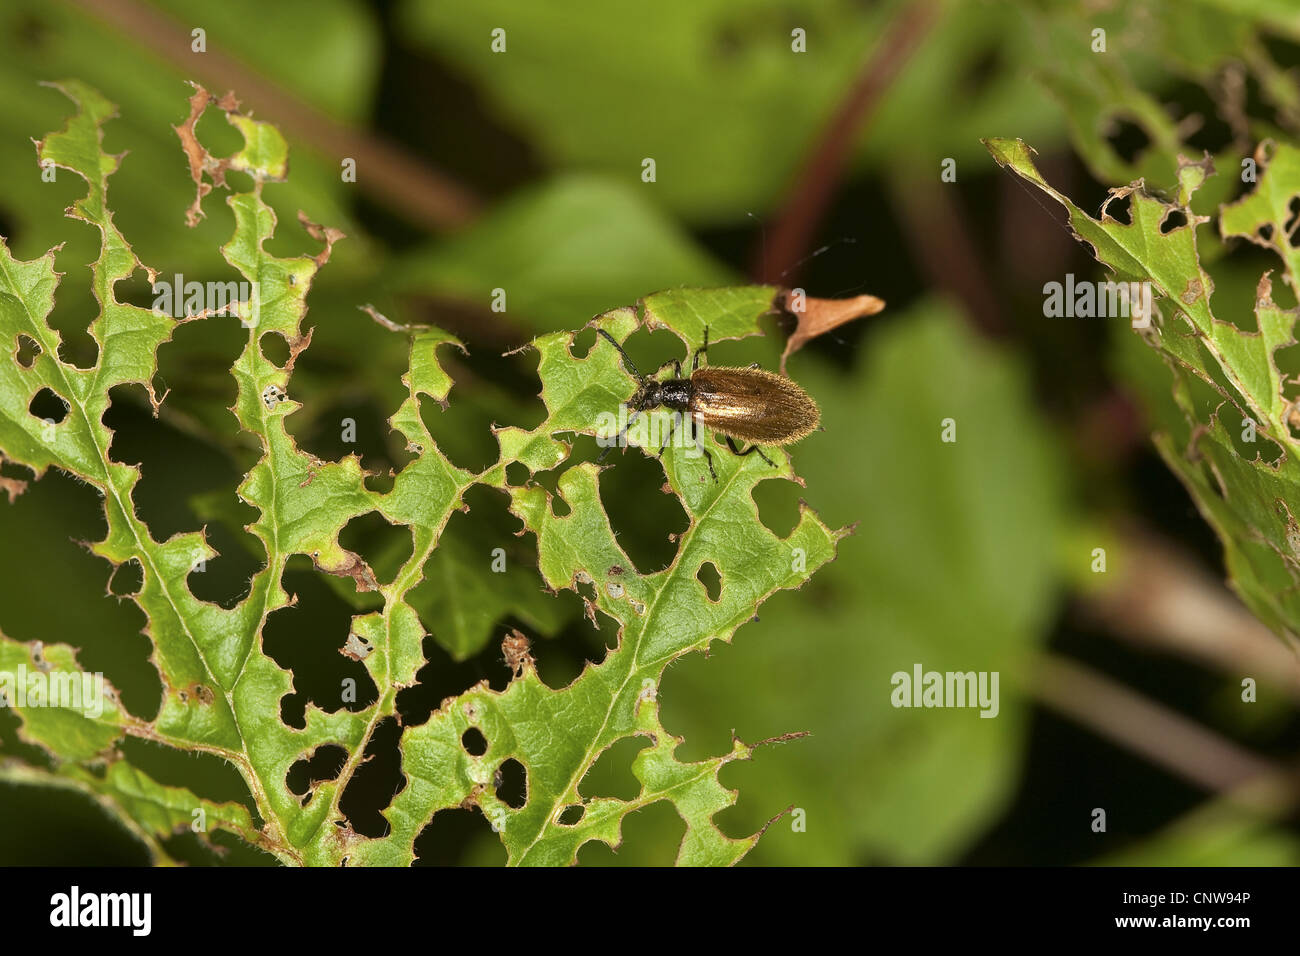 Lagria hirta (Lagria hirta), feeding on a leaf of Viburnum, Germany Stock Photo